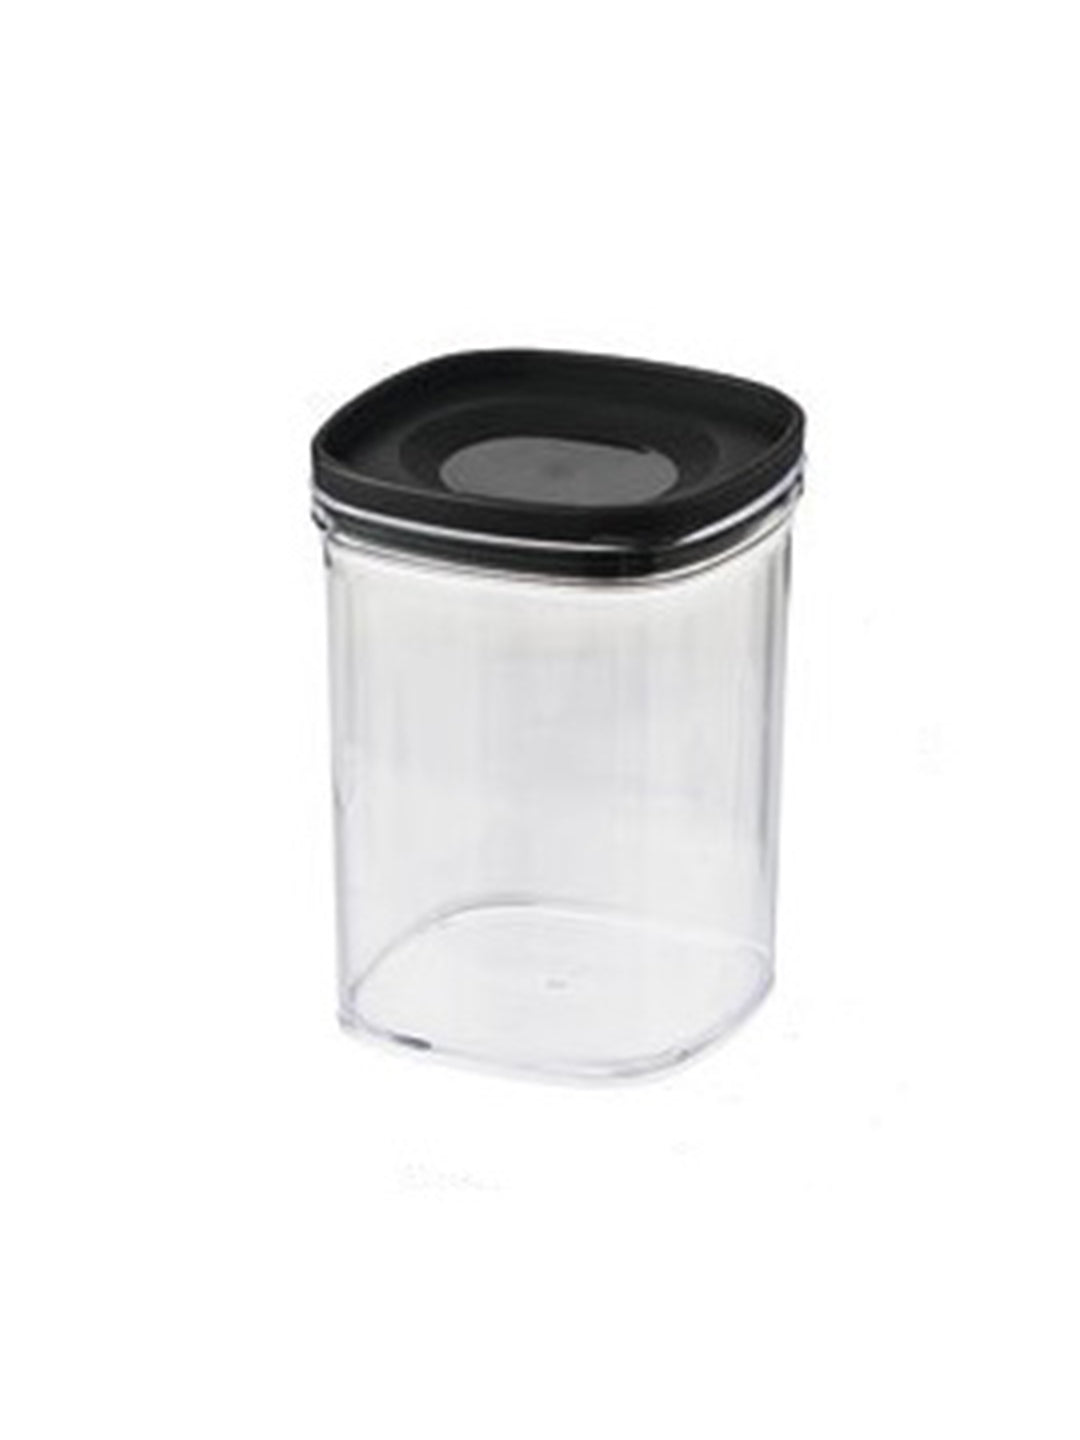 VON CASA Kitchen Cabinet Medium Airtight Plastic Containers - Black, Transparent